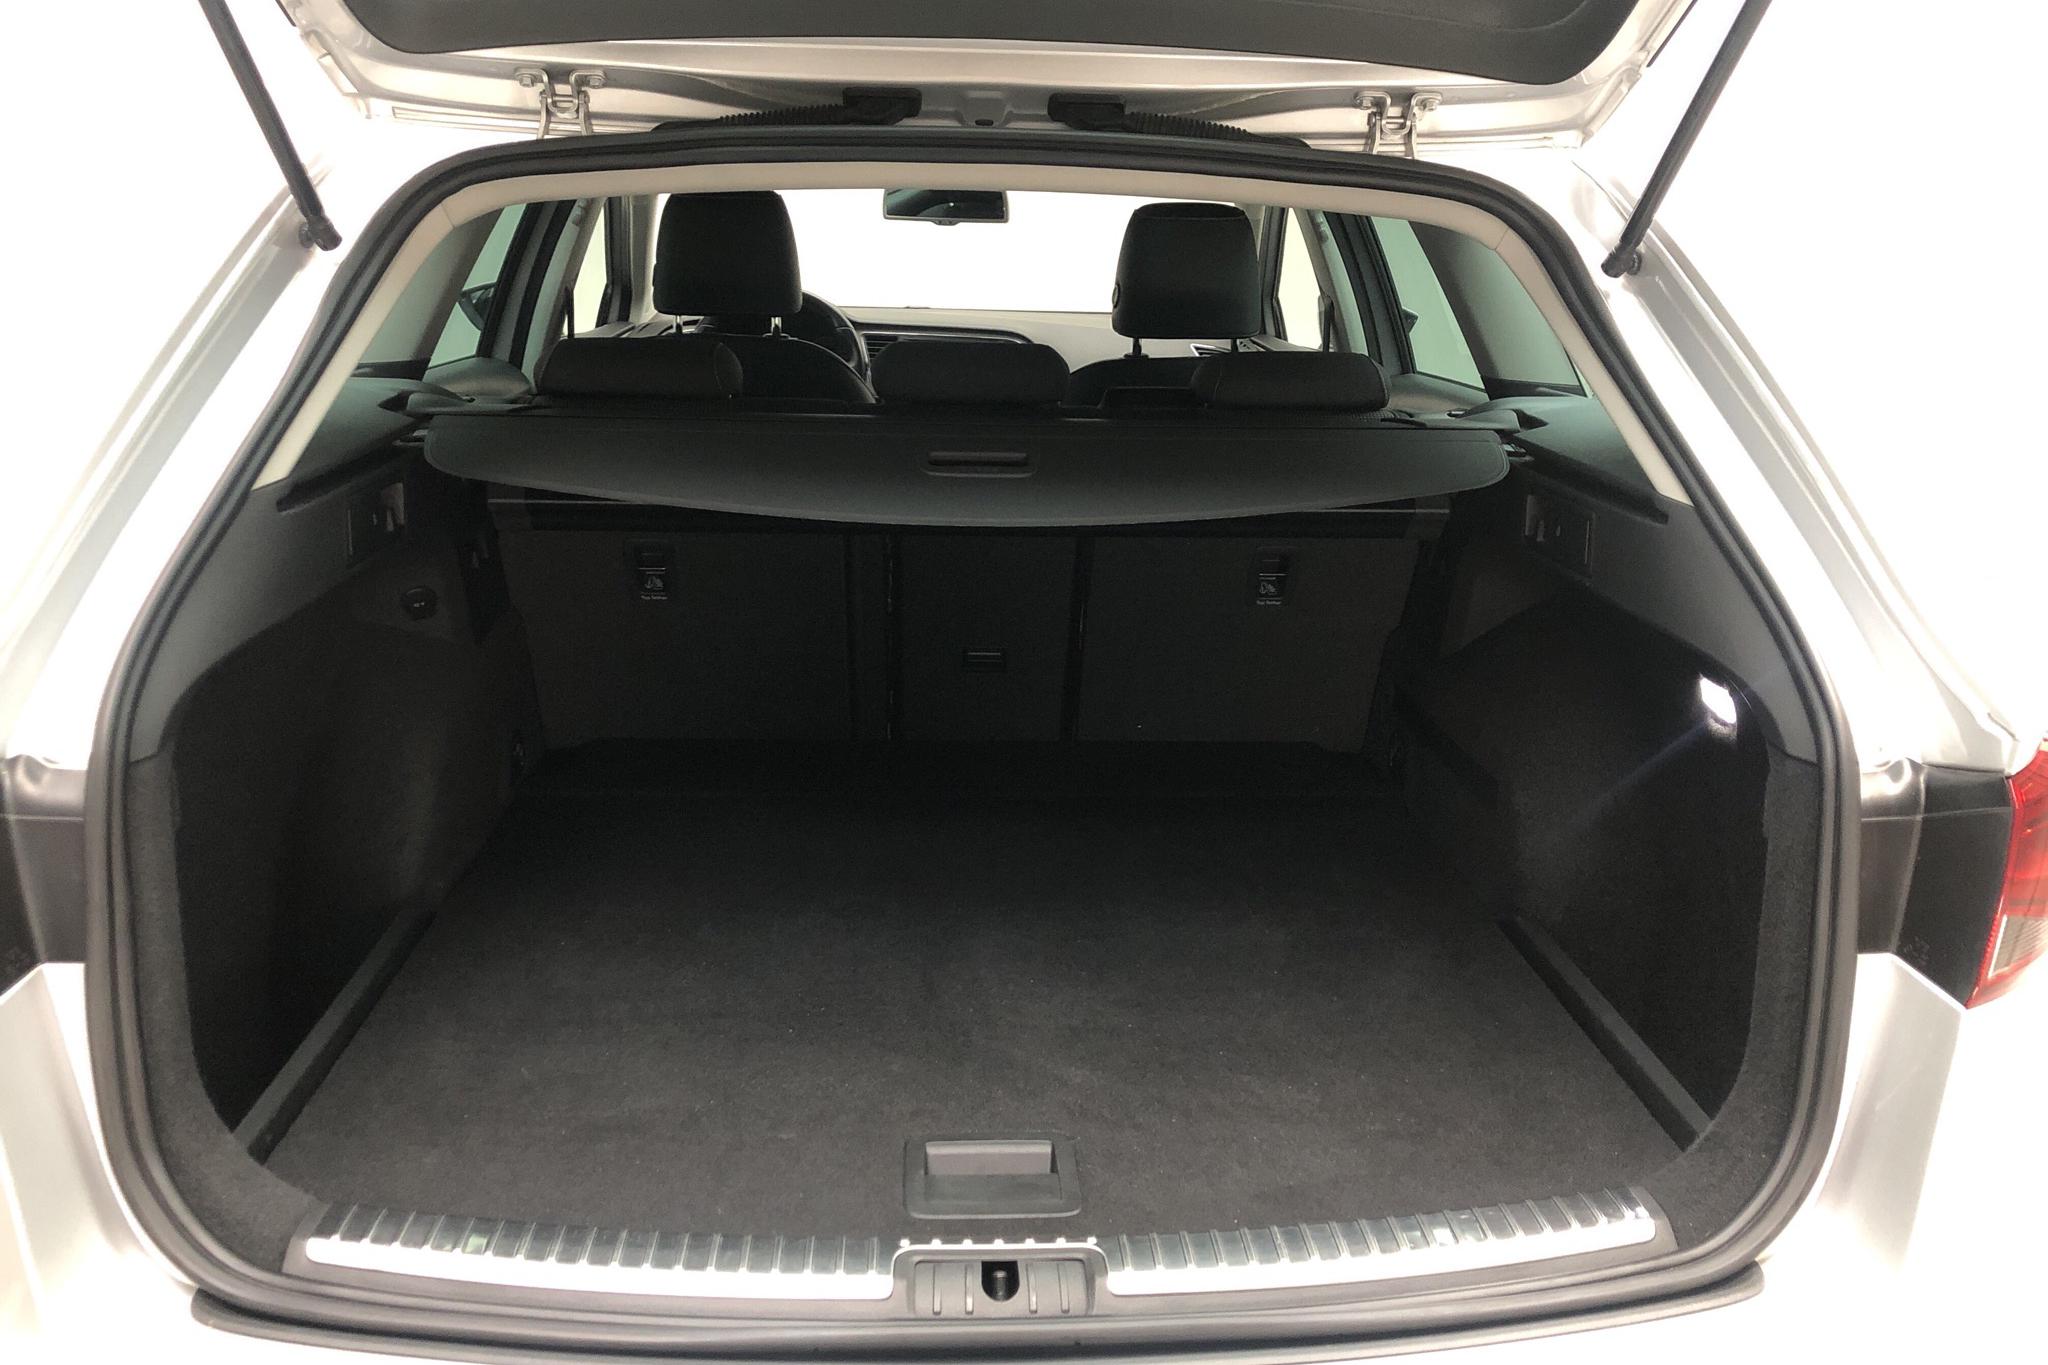 Seat Leon 1.6 TDI ST X-Perience 4Drive (110hk) - 130 930 km - Manual - silver - 2015